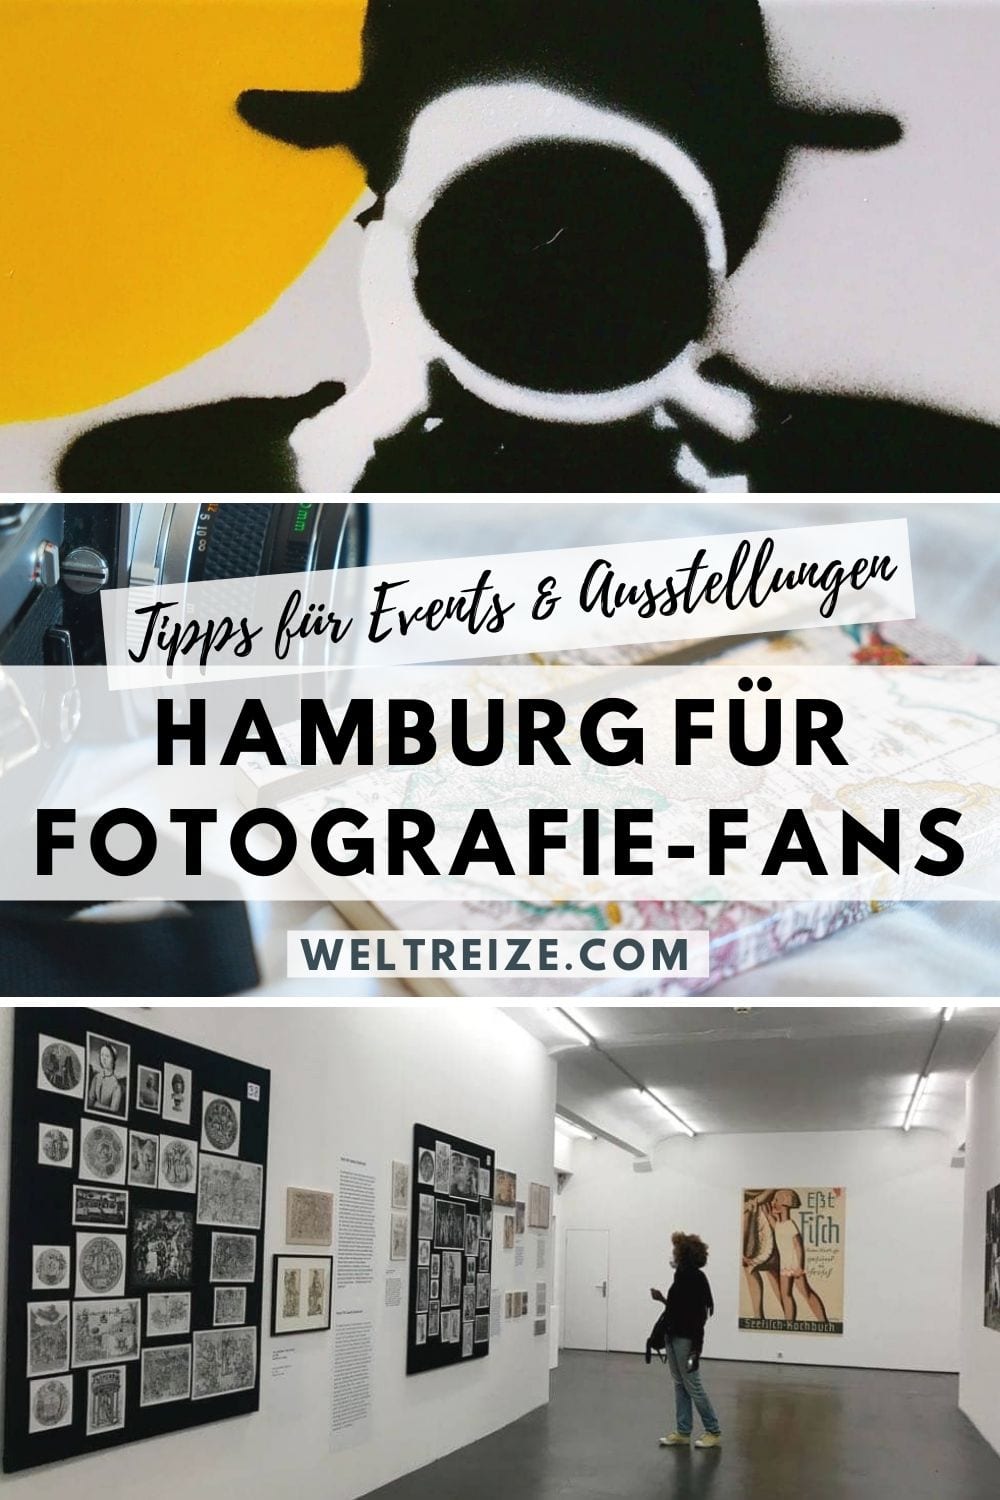 Hamburg-Tipps für Fotografie-Fans weiterempfehlen